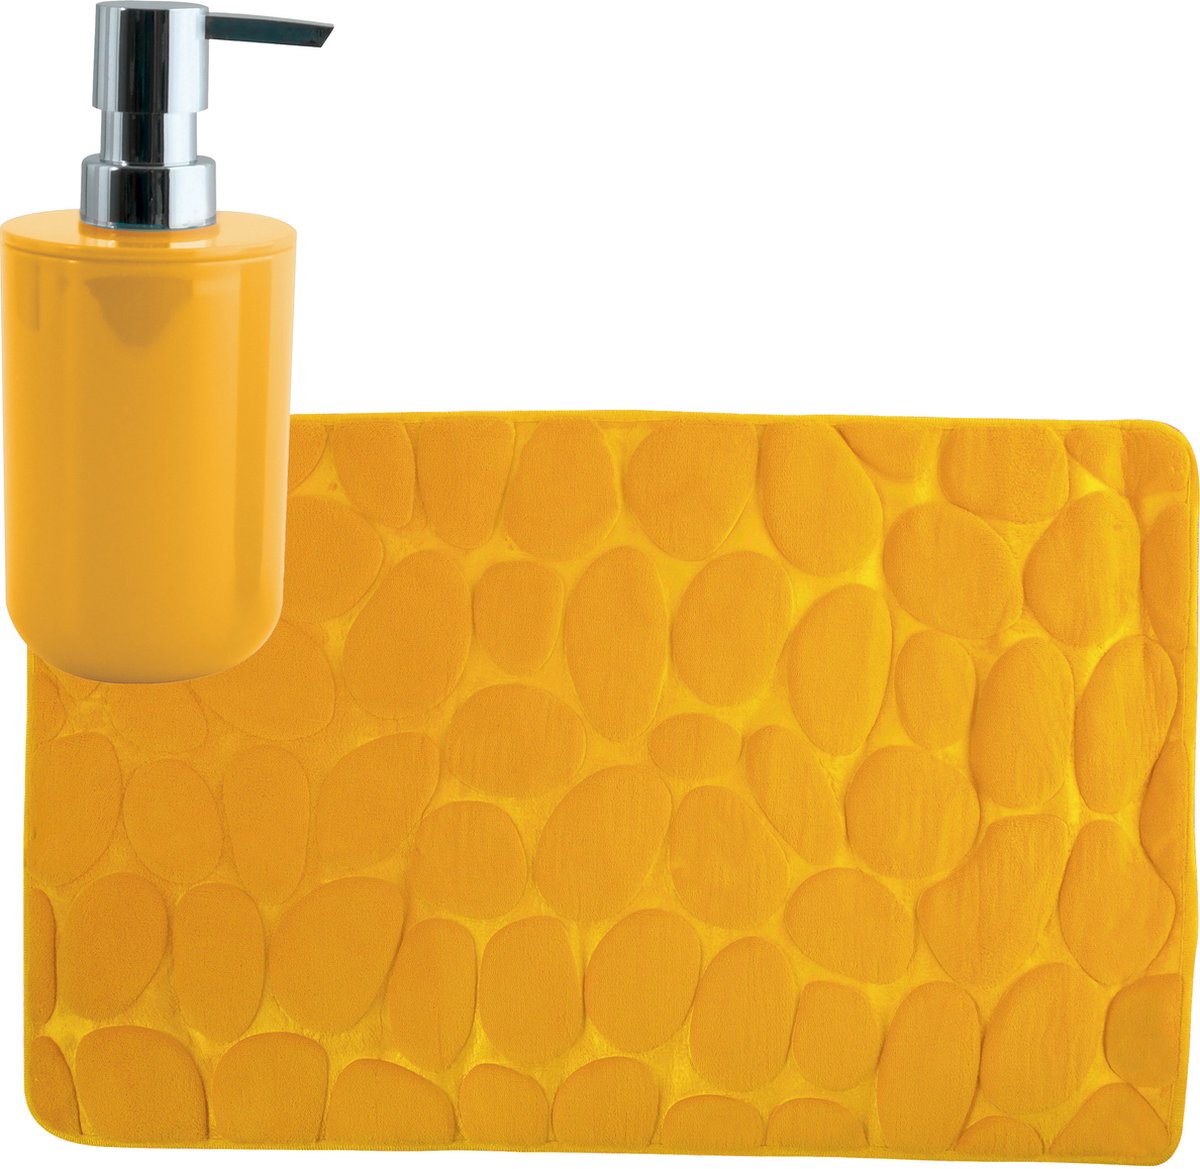 MSV badkamer droogloop mat tapijt Kiezel motief 50 x 80 cm zelfde kleur zeeppompje 260 ml saffraan geel